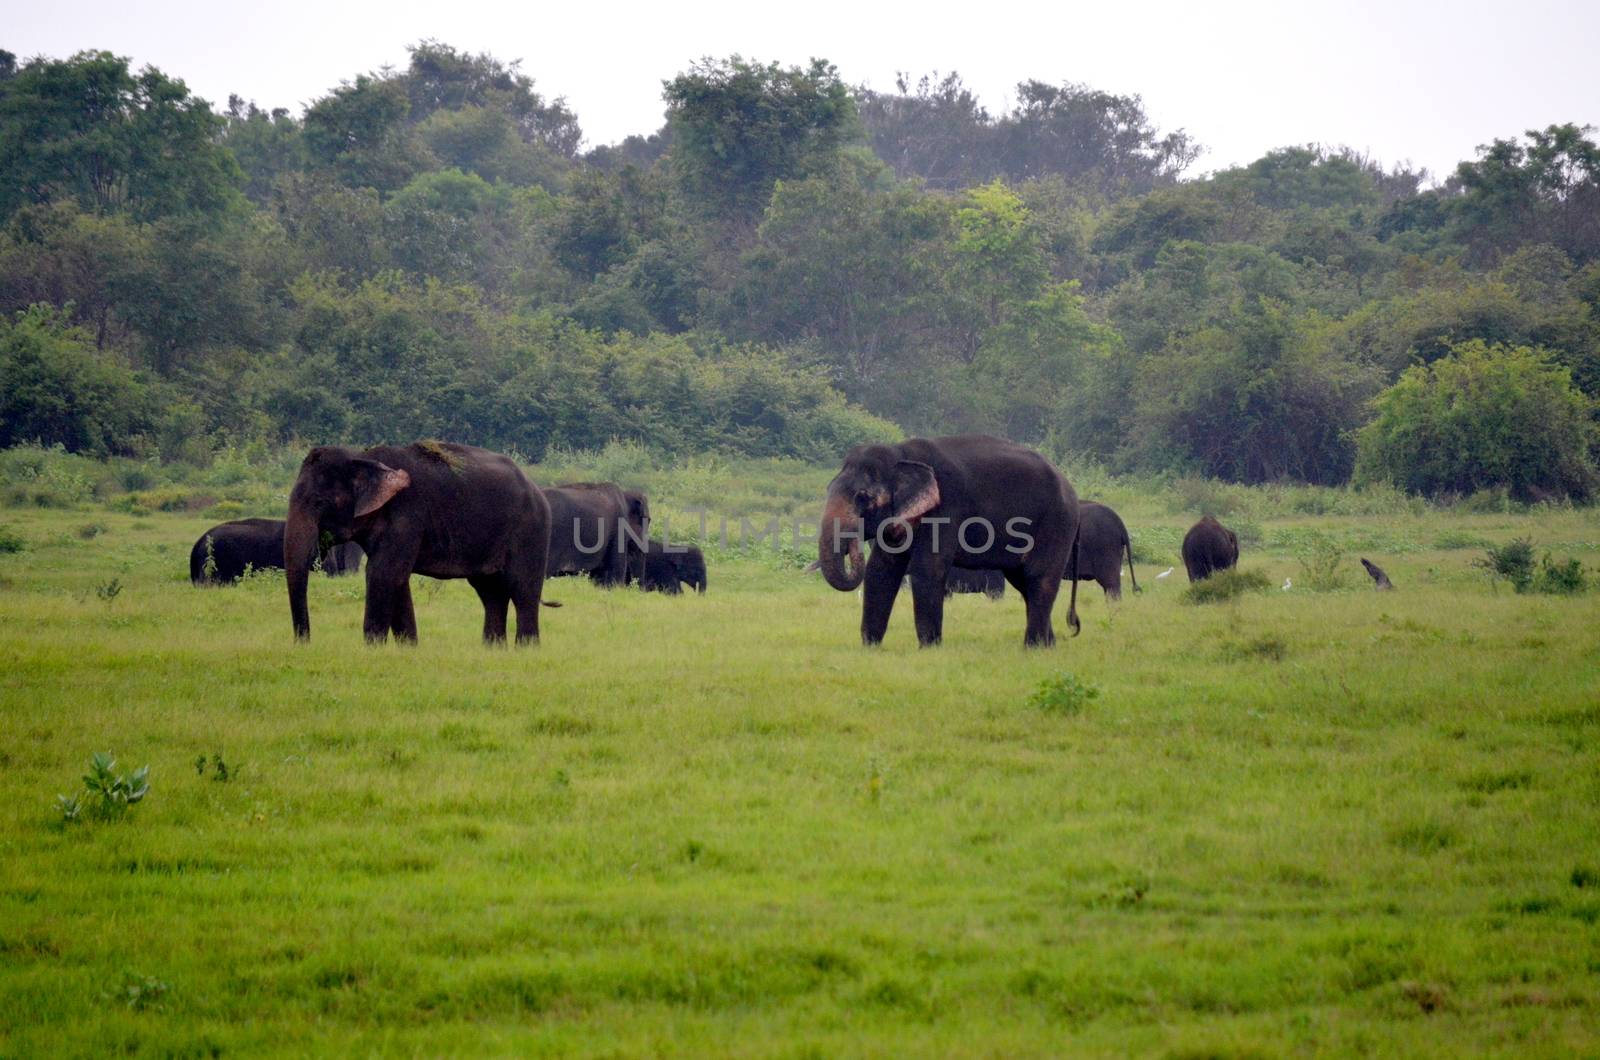 Elephants in the beautiful landscape by inguaribile